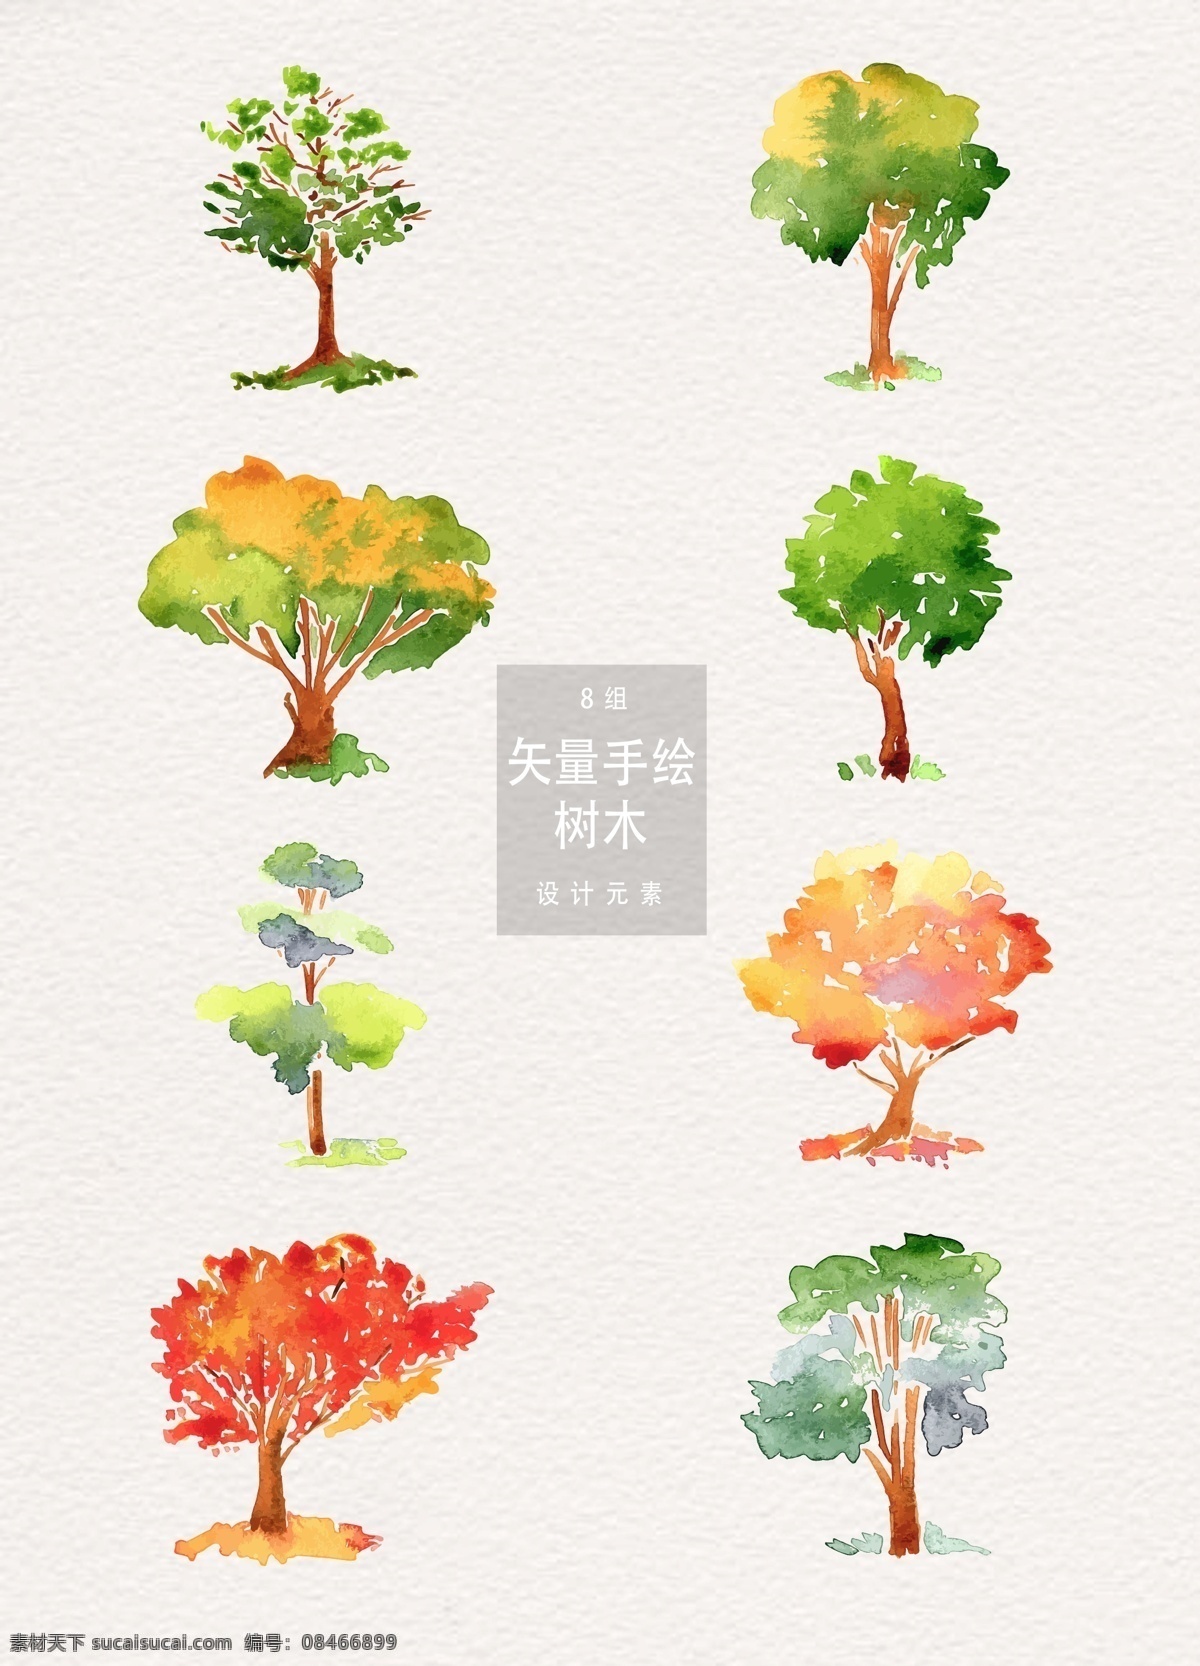 水彩 手绘 矢量 树木 夏季 夏日 矢量素材 植物 元素 立夏 夏天 手绘树木 绿树 水彩树木 水彩插画